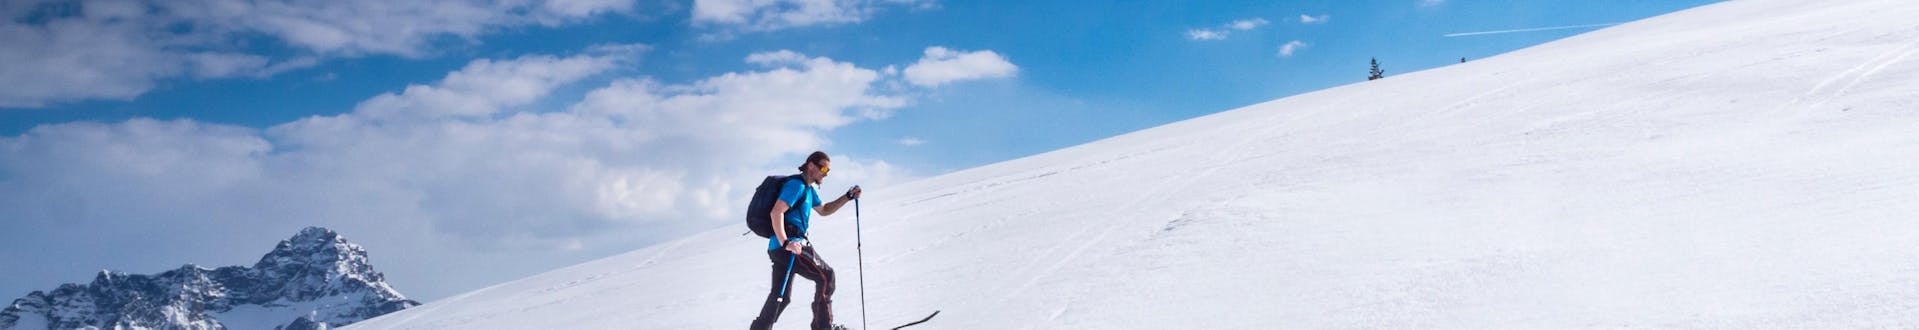 Un skieur de randonnée gravit la pente à Riezlern, en Autriche, par une journée ensoleillée.